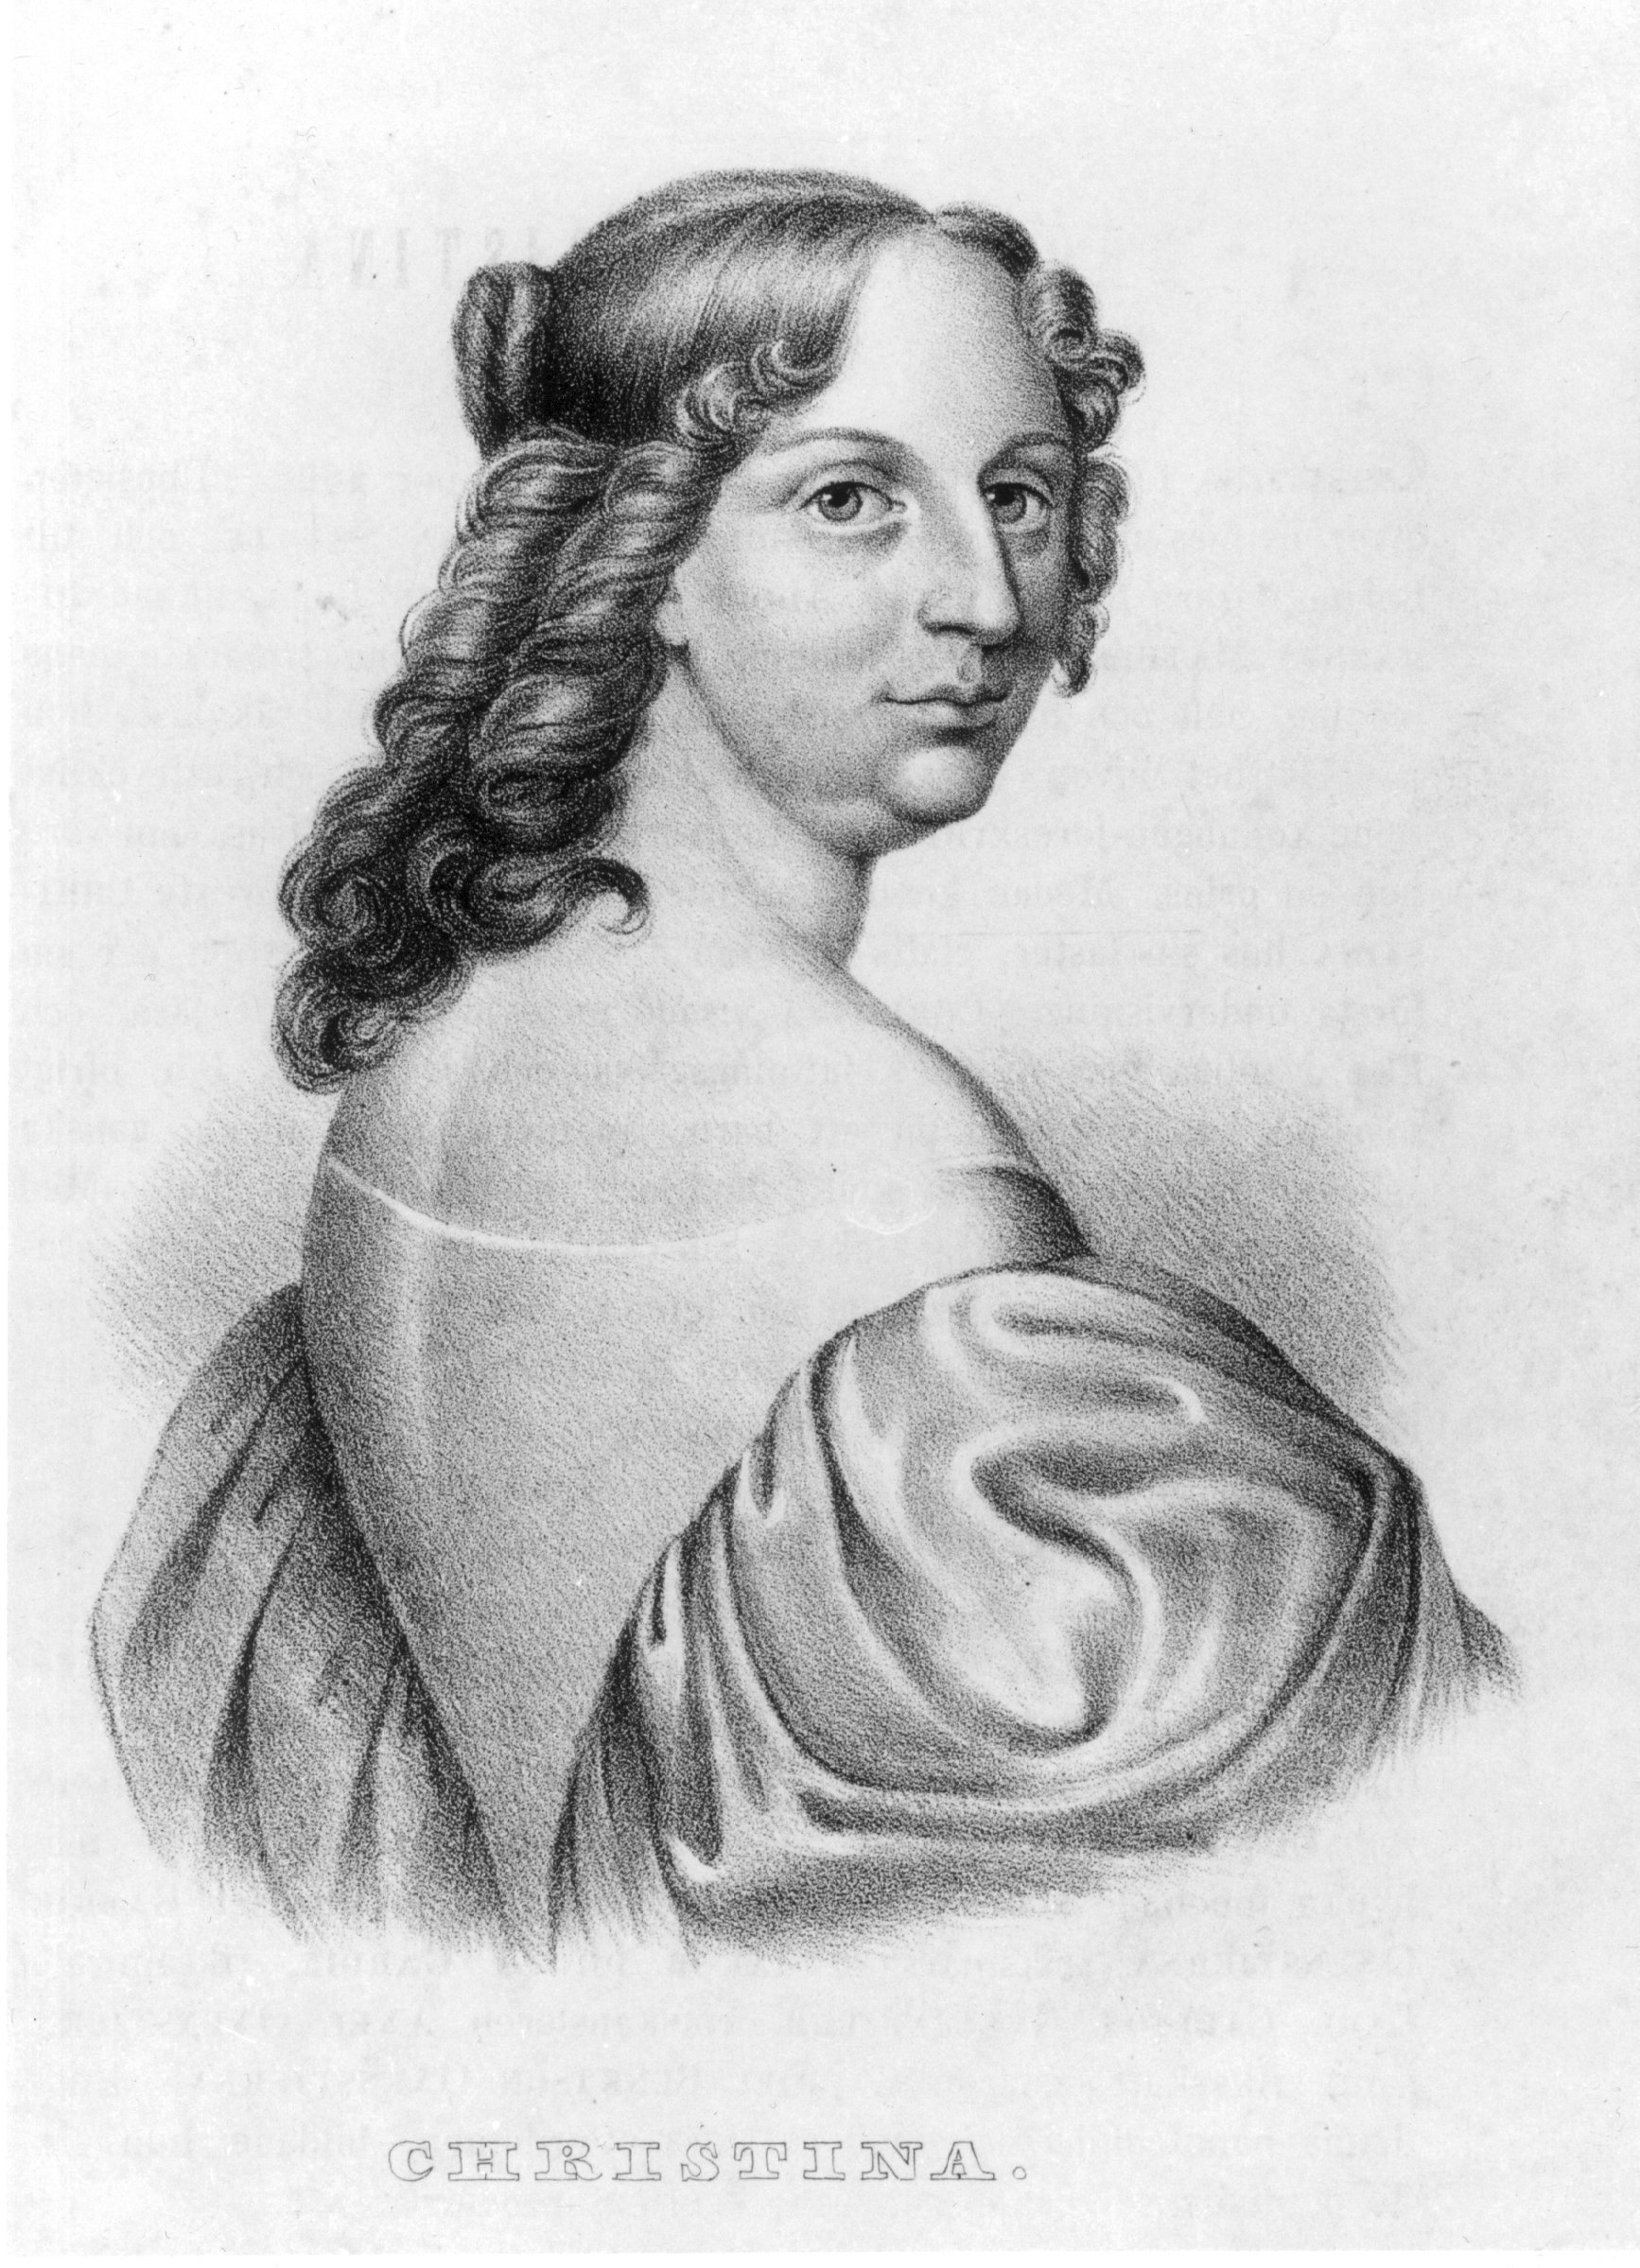 Drottning Kristina, som var drottning under åren 1632 till 1654, gav order om att alla romer skulle avrättas.